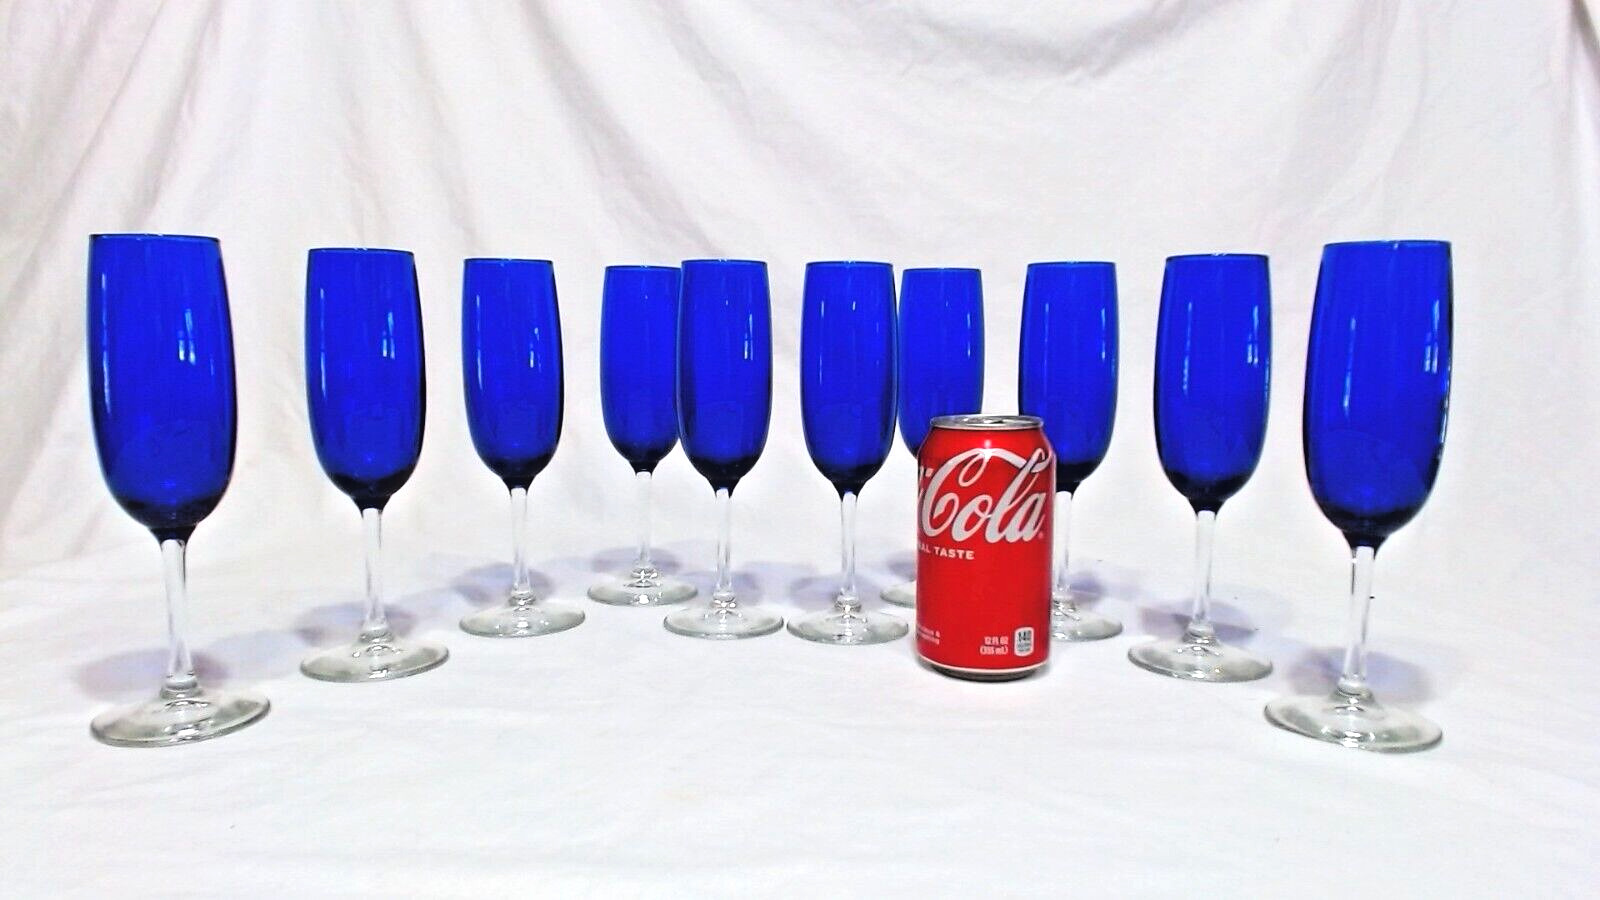 VINTAGE COBALT BLUE GLASS TOP & CLEAR STEM CHAMPAYNE GOBLETS, SET 10, 8